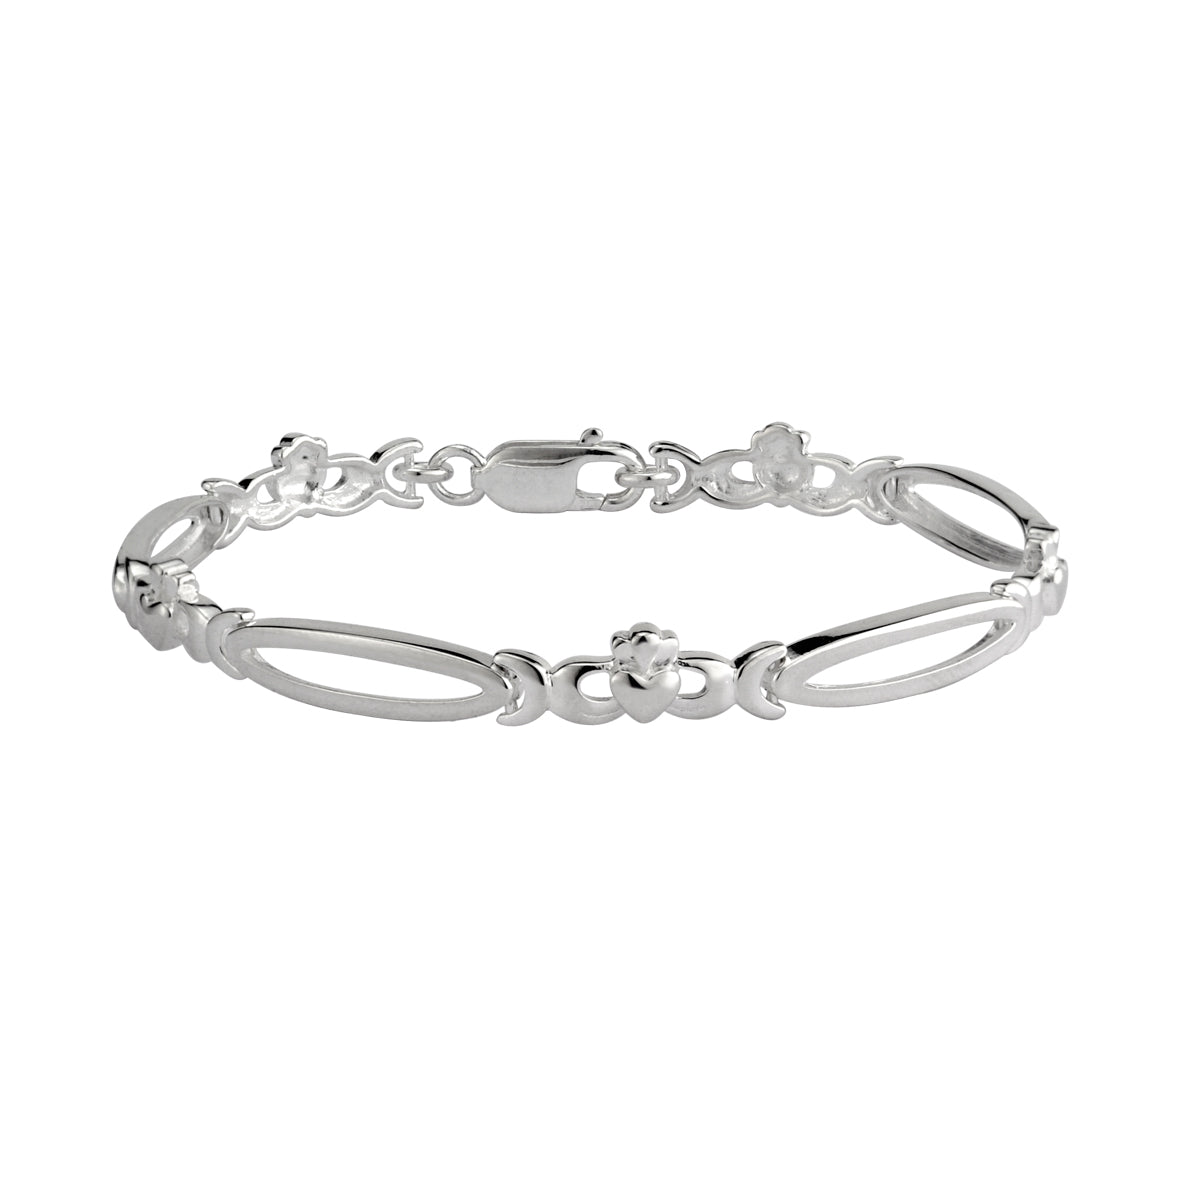 sterling silver claddagh link bracelet s5462 from Solvar